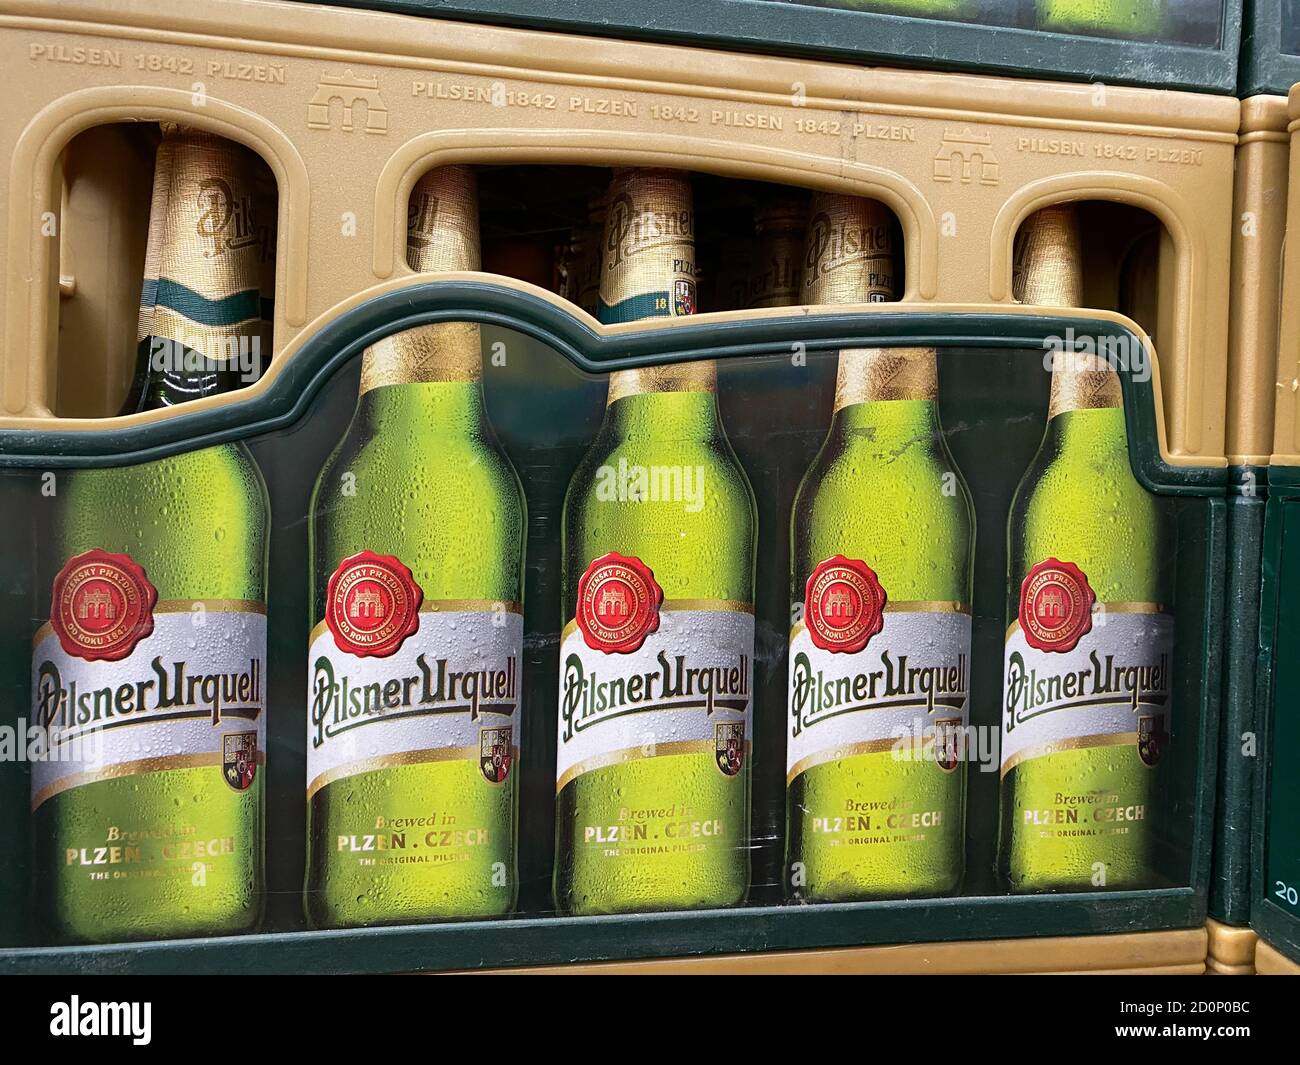 Viersen, Deutschland - 9. Juli. 2020: Blick auf die isolierte Pilsener Urquell Bierkiste im deutschen Supermarkt Stockfoto